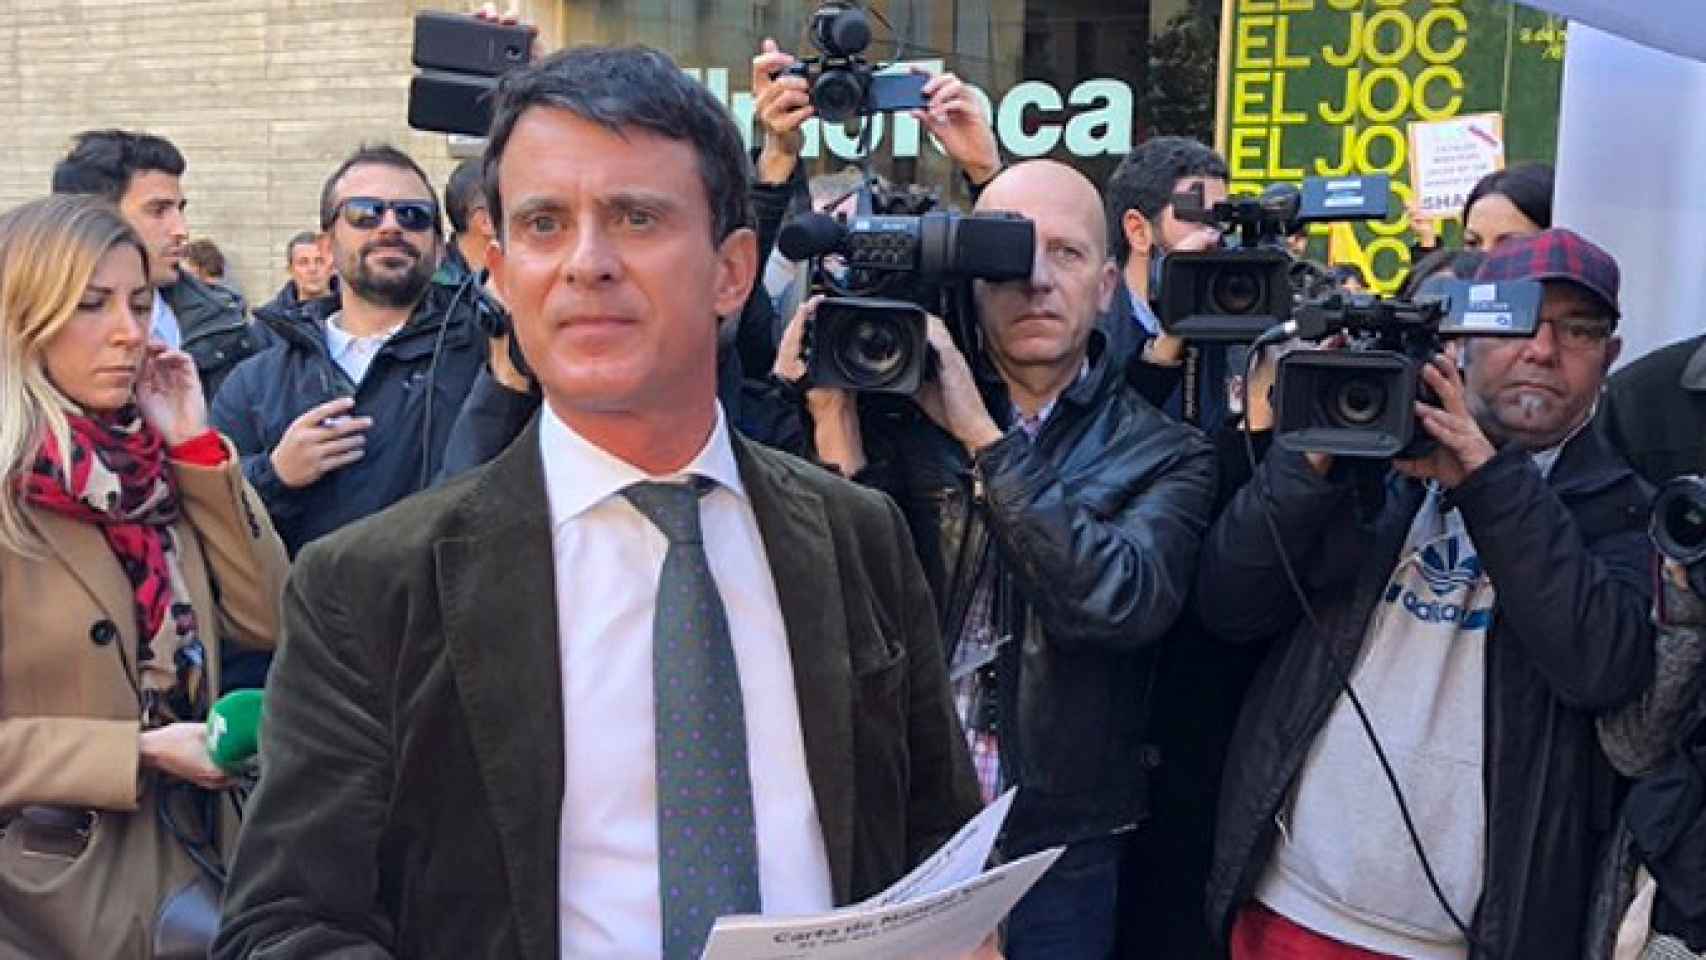 El exprimer ministro francés Manuel Valls en un mitin en el Raval / TWITTER